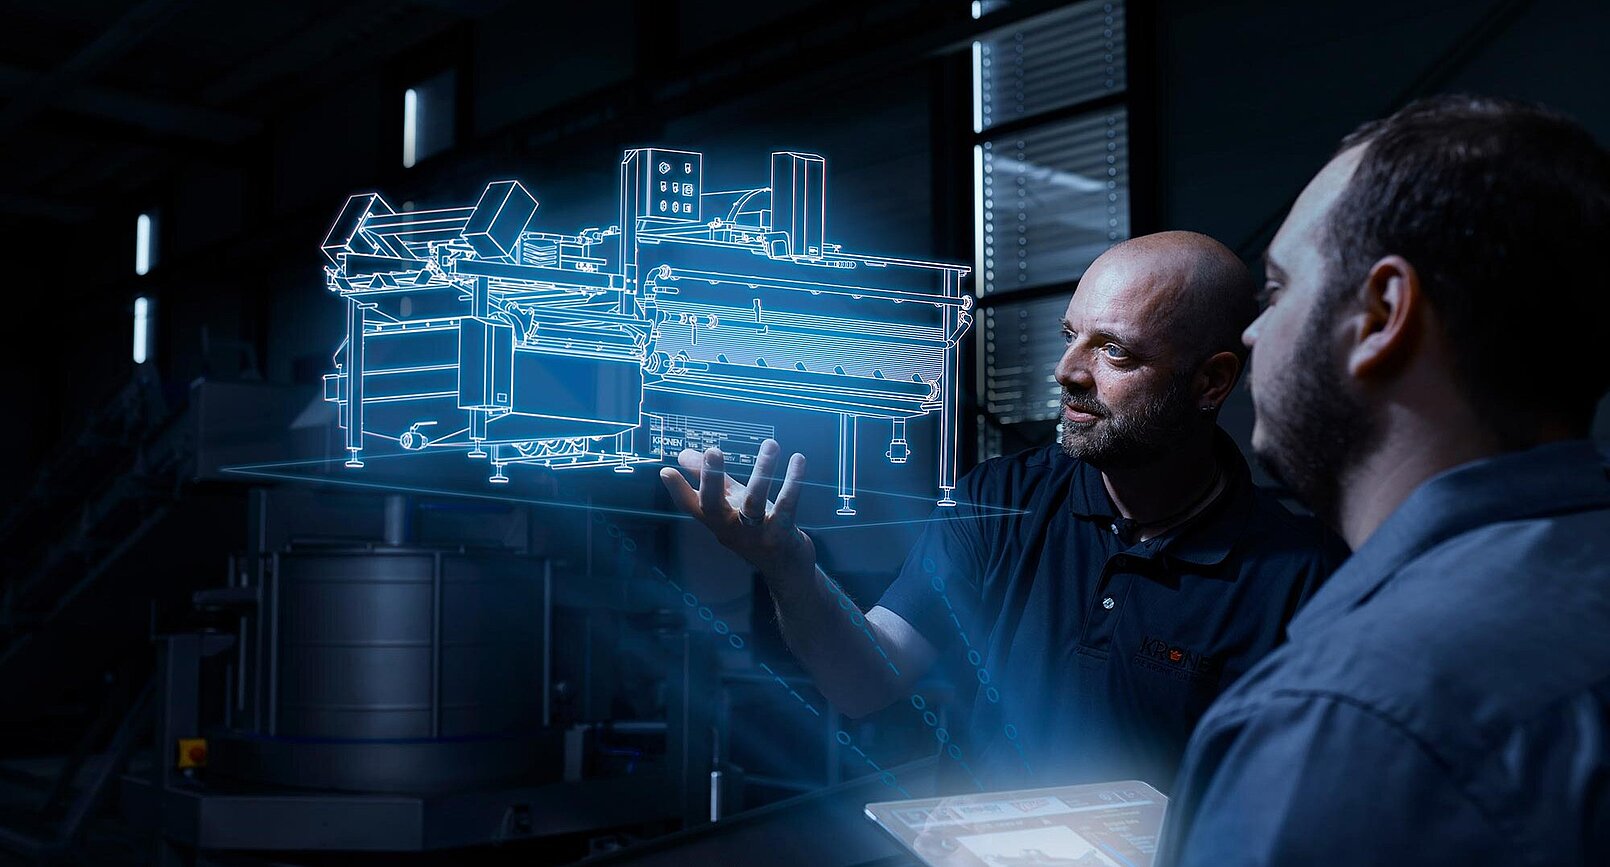 KRONEN SMART Solutions: Vernetzung von Maschinen in der Produktion: für mehr Produktivität, Flexibilität, Qualität und Sicherheit - kommunikationsfähige Maschinen und Verarbeitungslinien (Industrie 4.0)